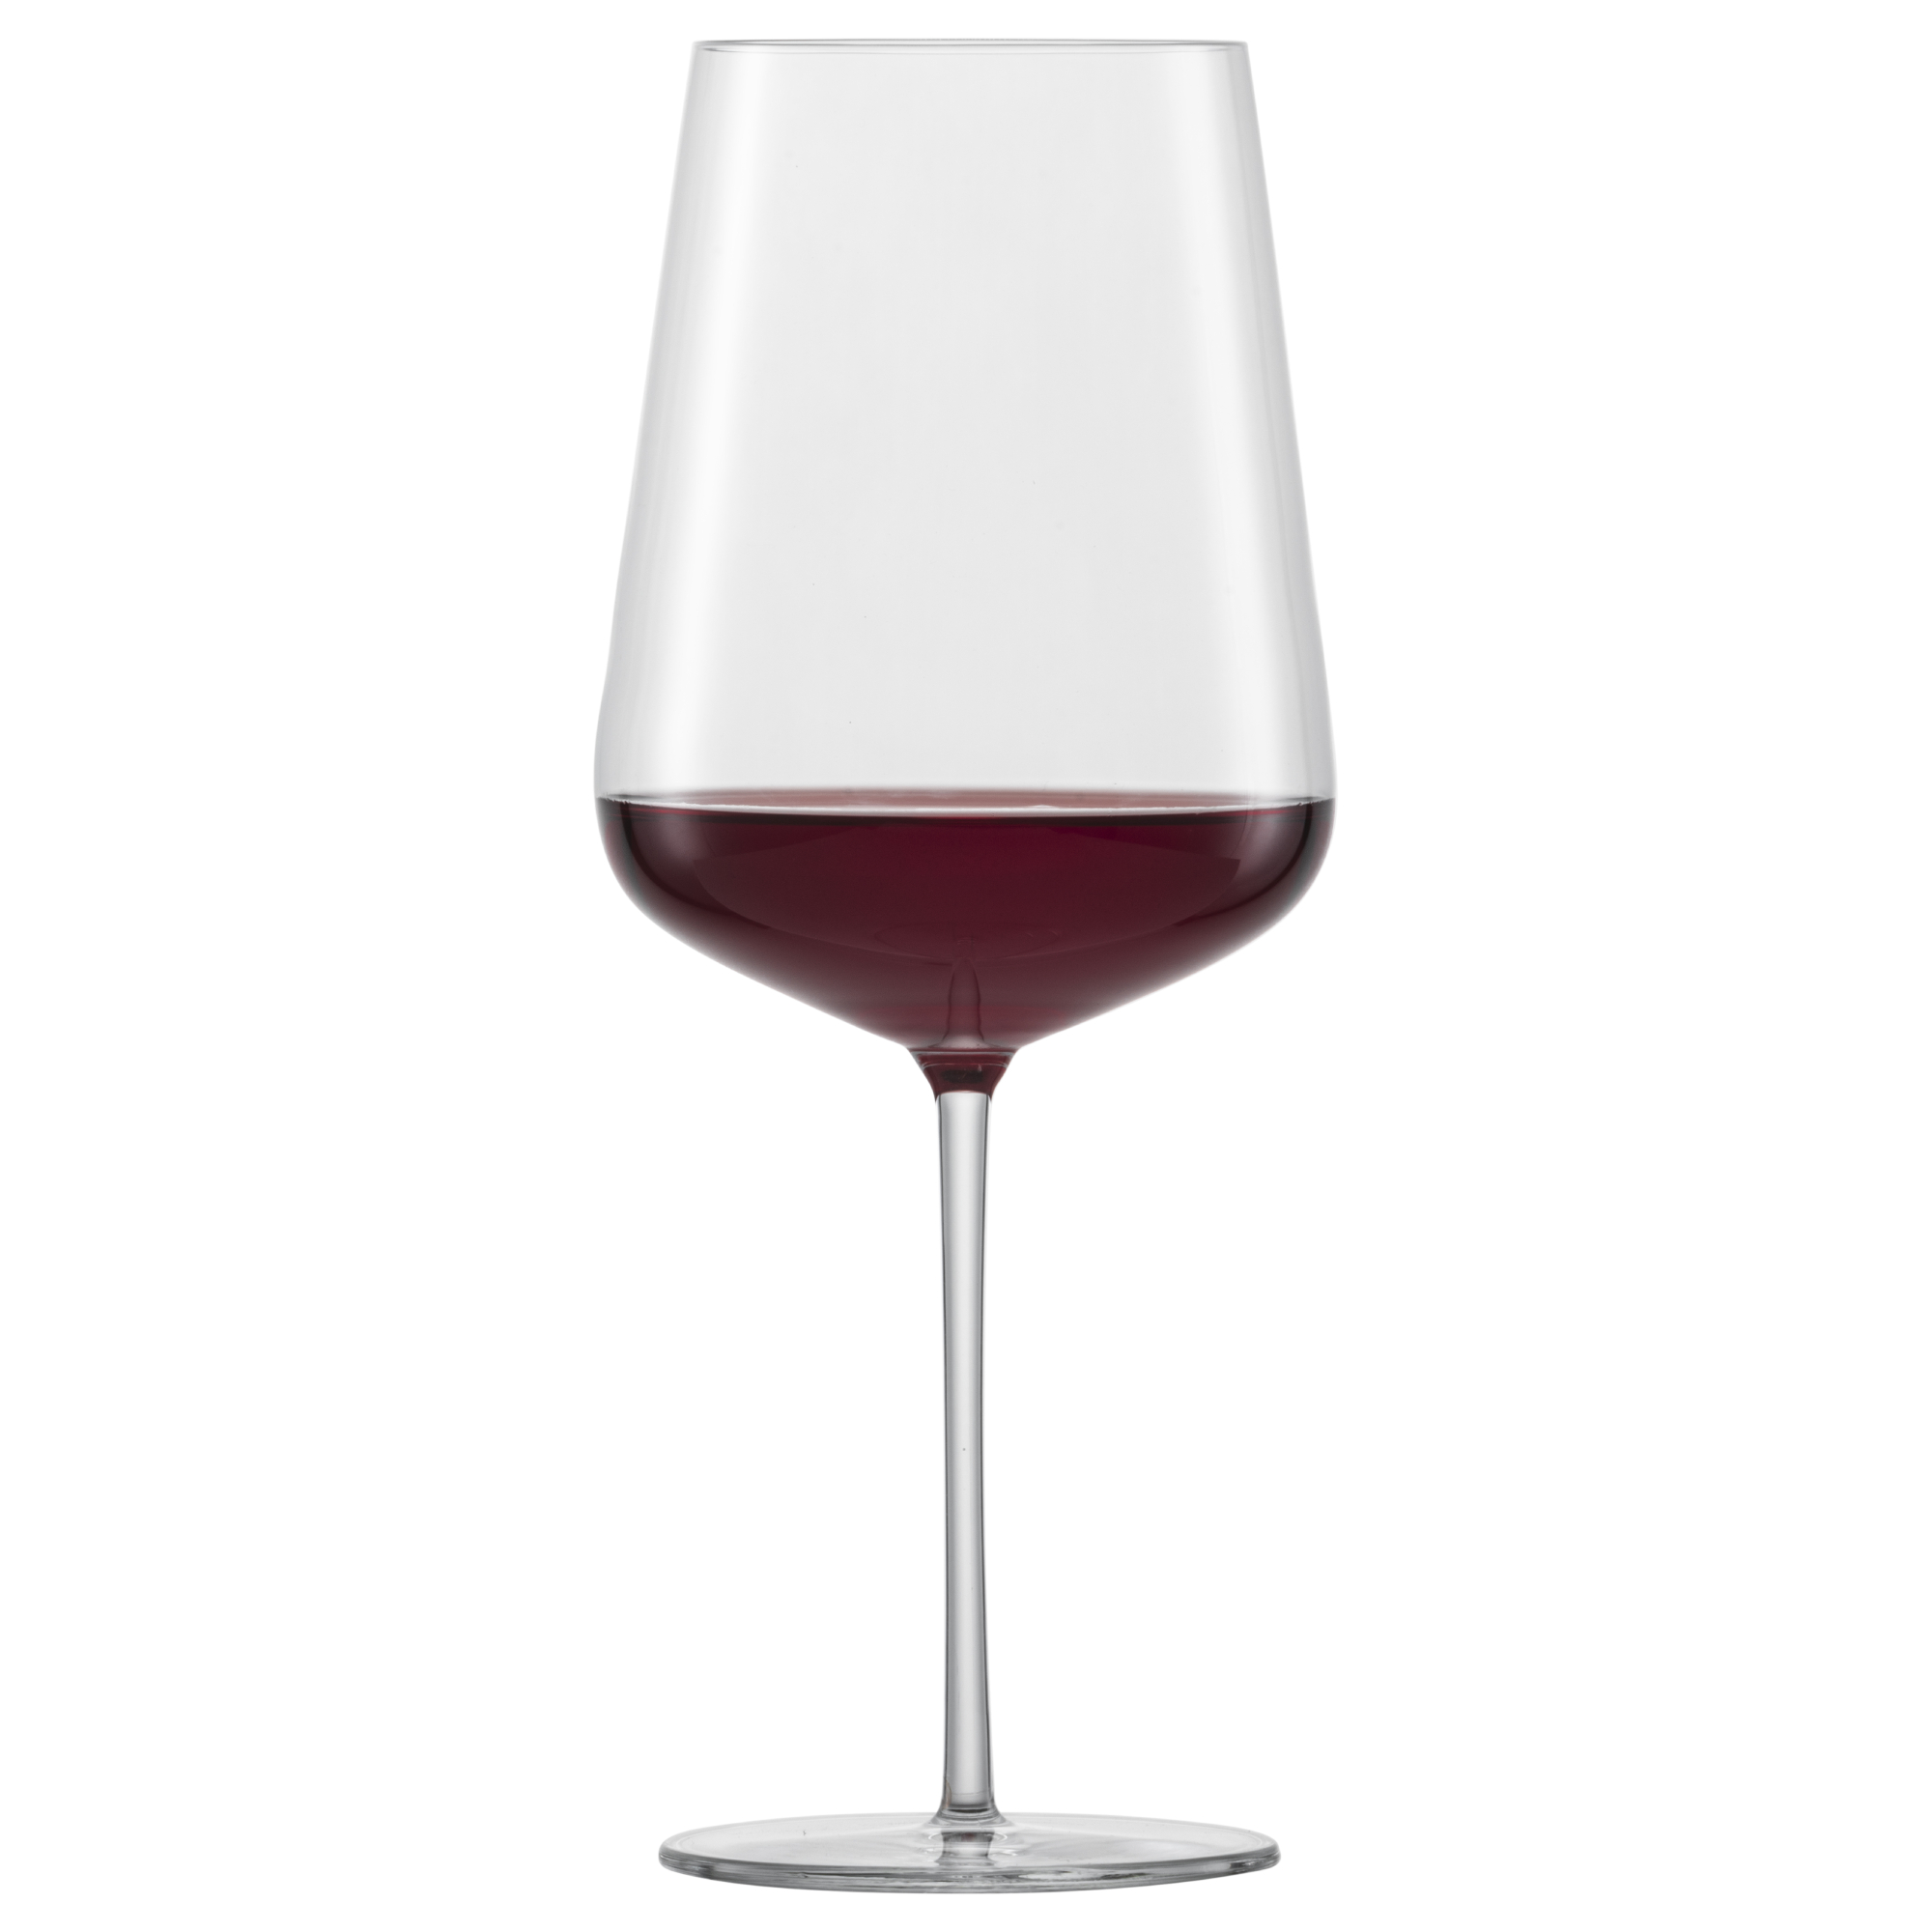 Набор бокалов для красного вина Schott Zwiesel Vervino 742 мл 2 шт набор бокалов для красного вина vervino burgundy 955 мл 2 шт 122202 zwiesel glas